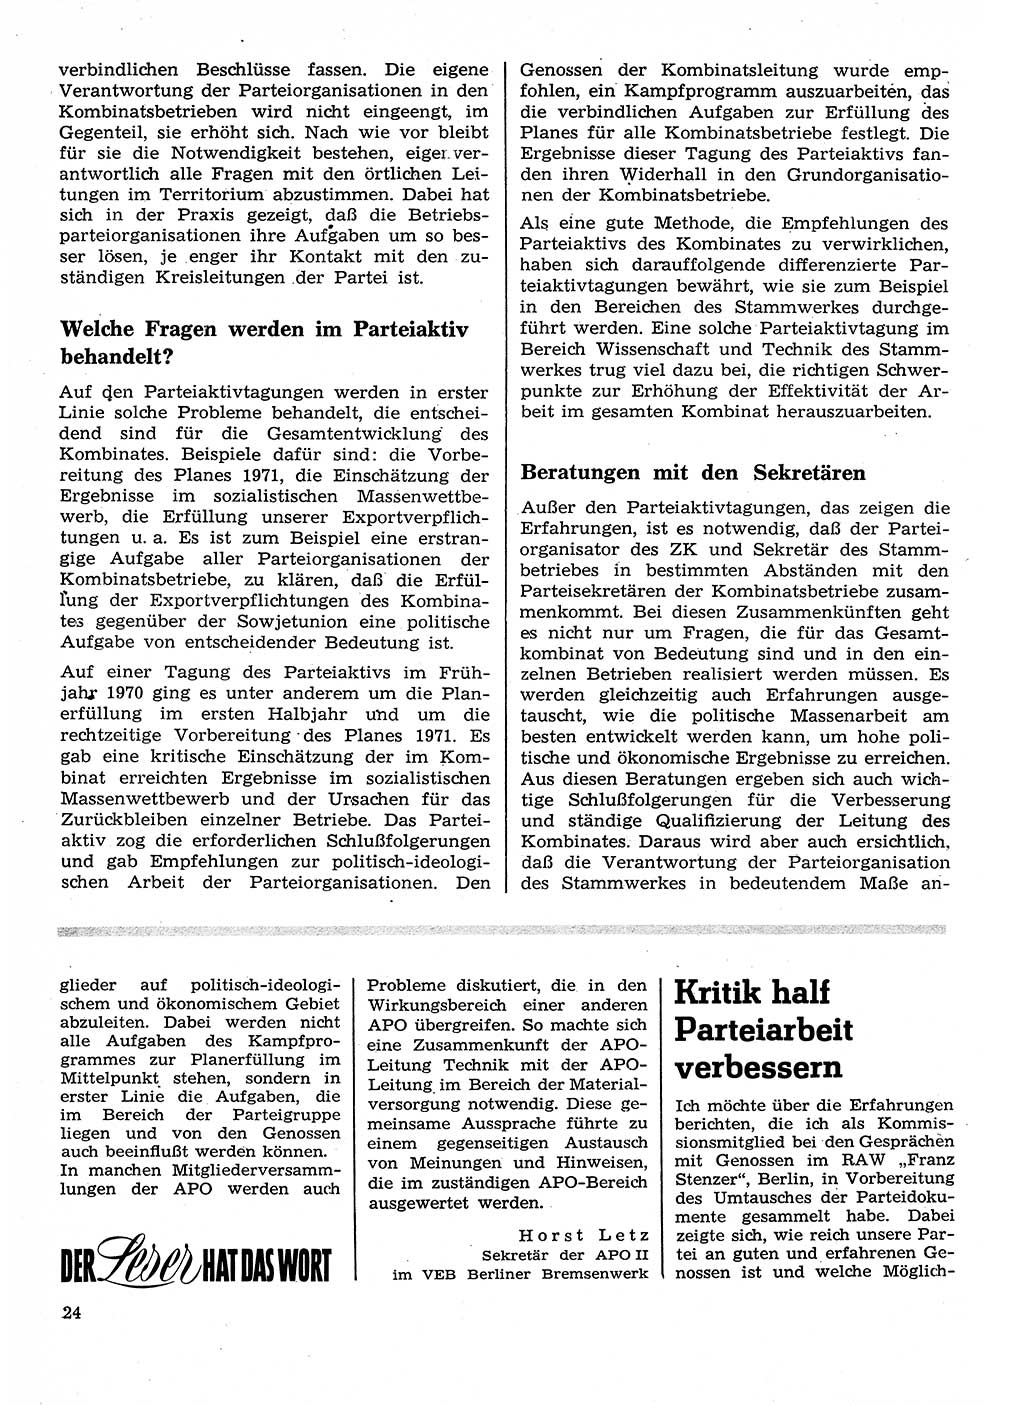 Neuer Weg (NW), Organ des Zentralkomitees (ZK) der SED (Sozialistische Einheitspartei Deutschlands) für Fragen des Parteilebens, 26. Jahrgang [Deutsche Demokratische Republik (DDR)] 1971, Seite 24 (NW ZK SED DDR 1971, S. 24)